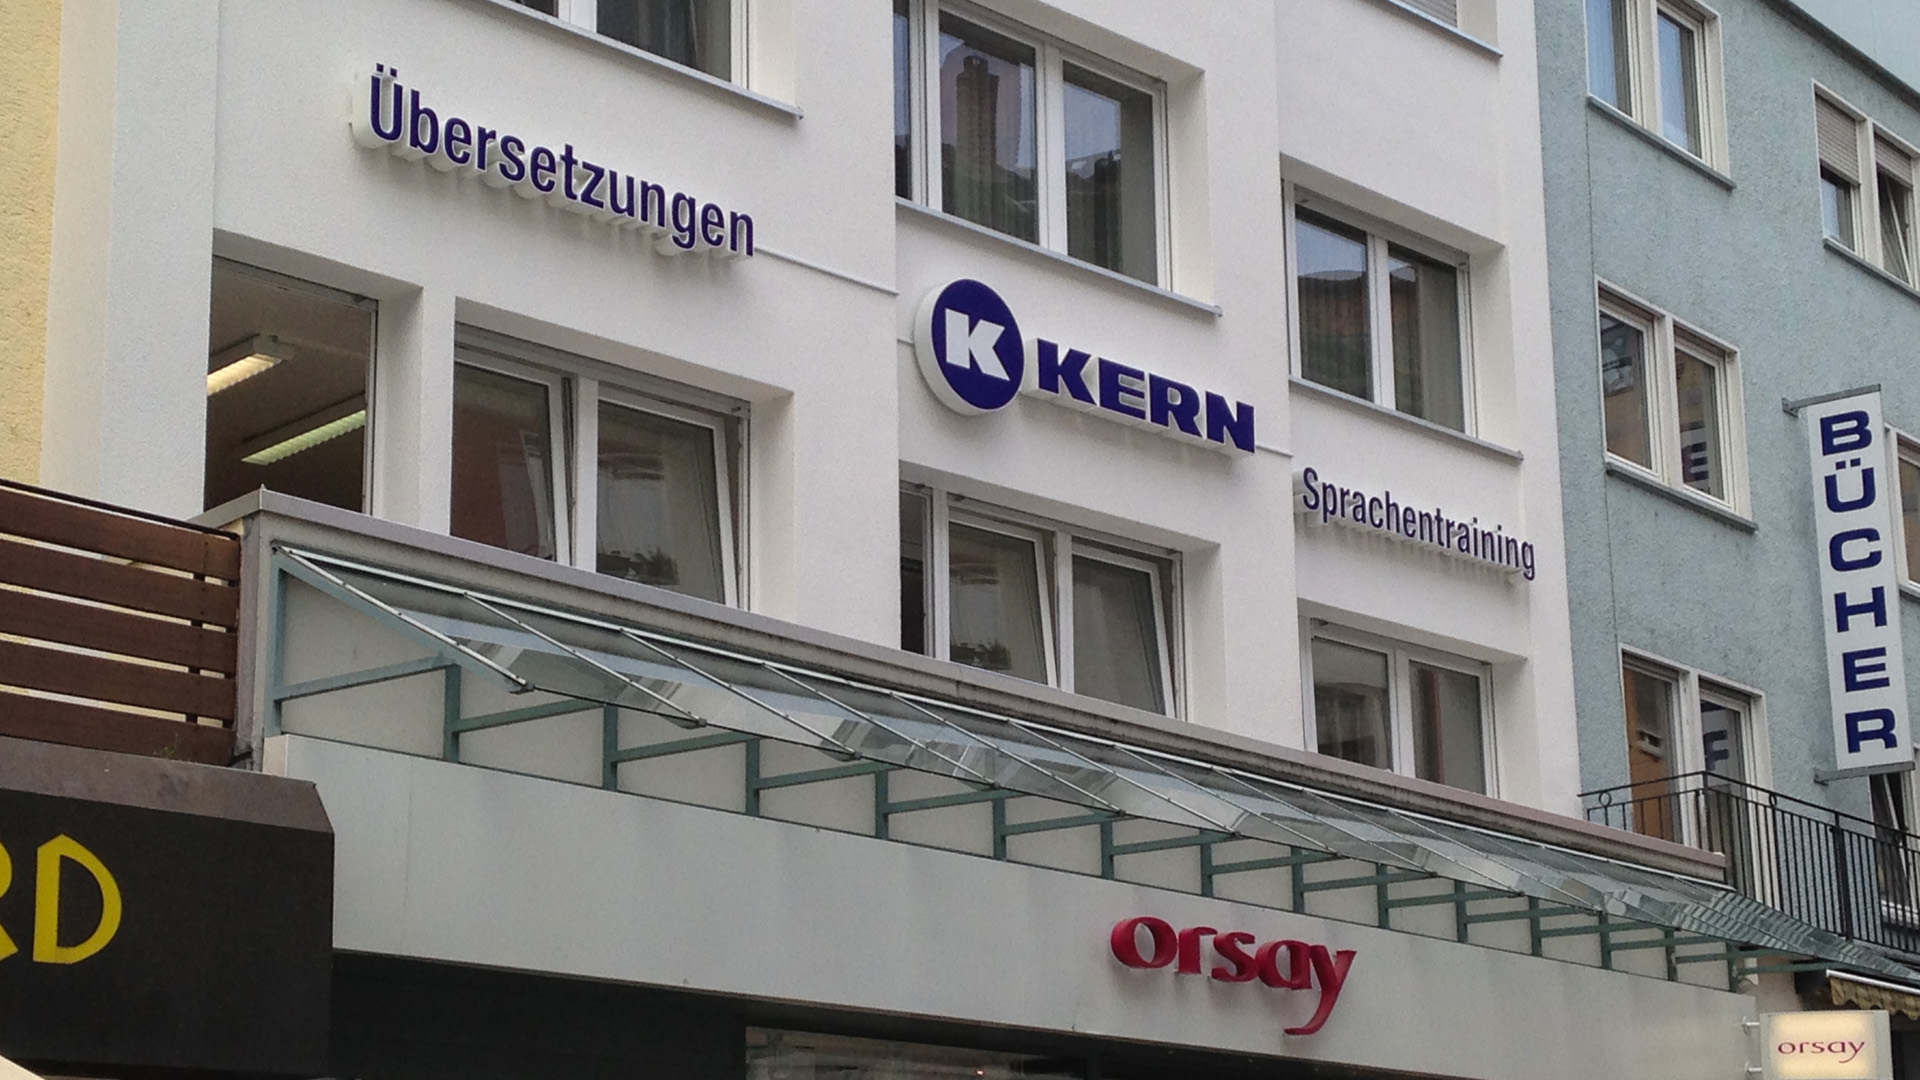 Friedrichshafen translation office